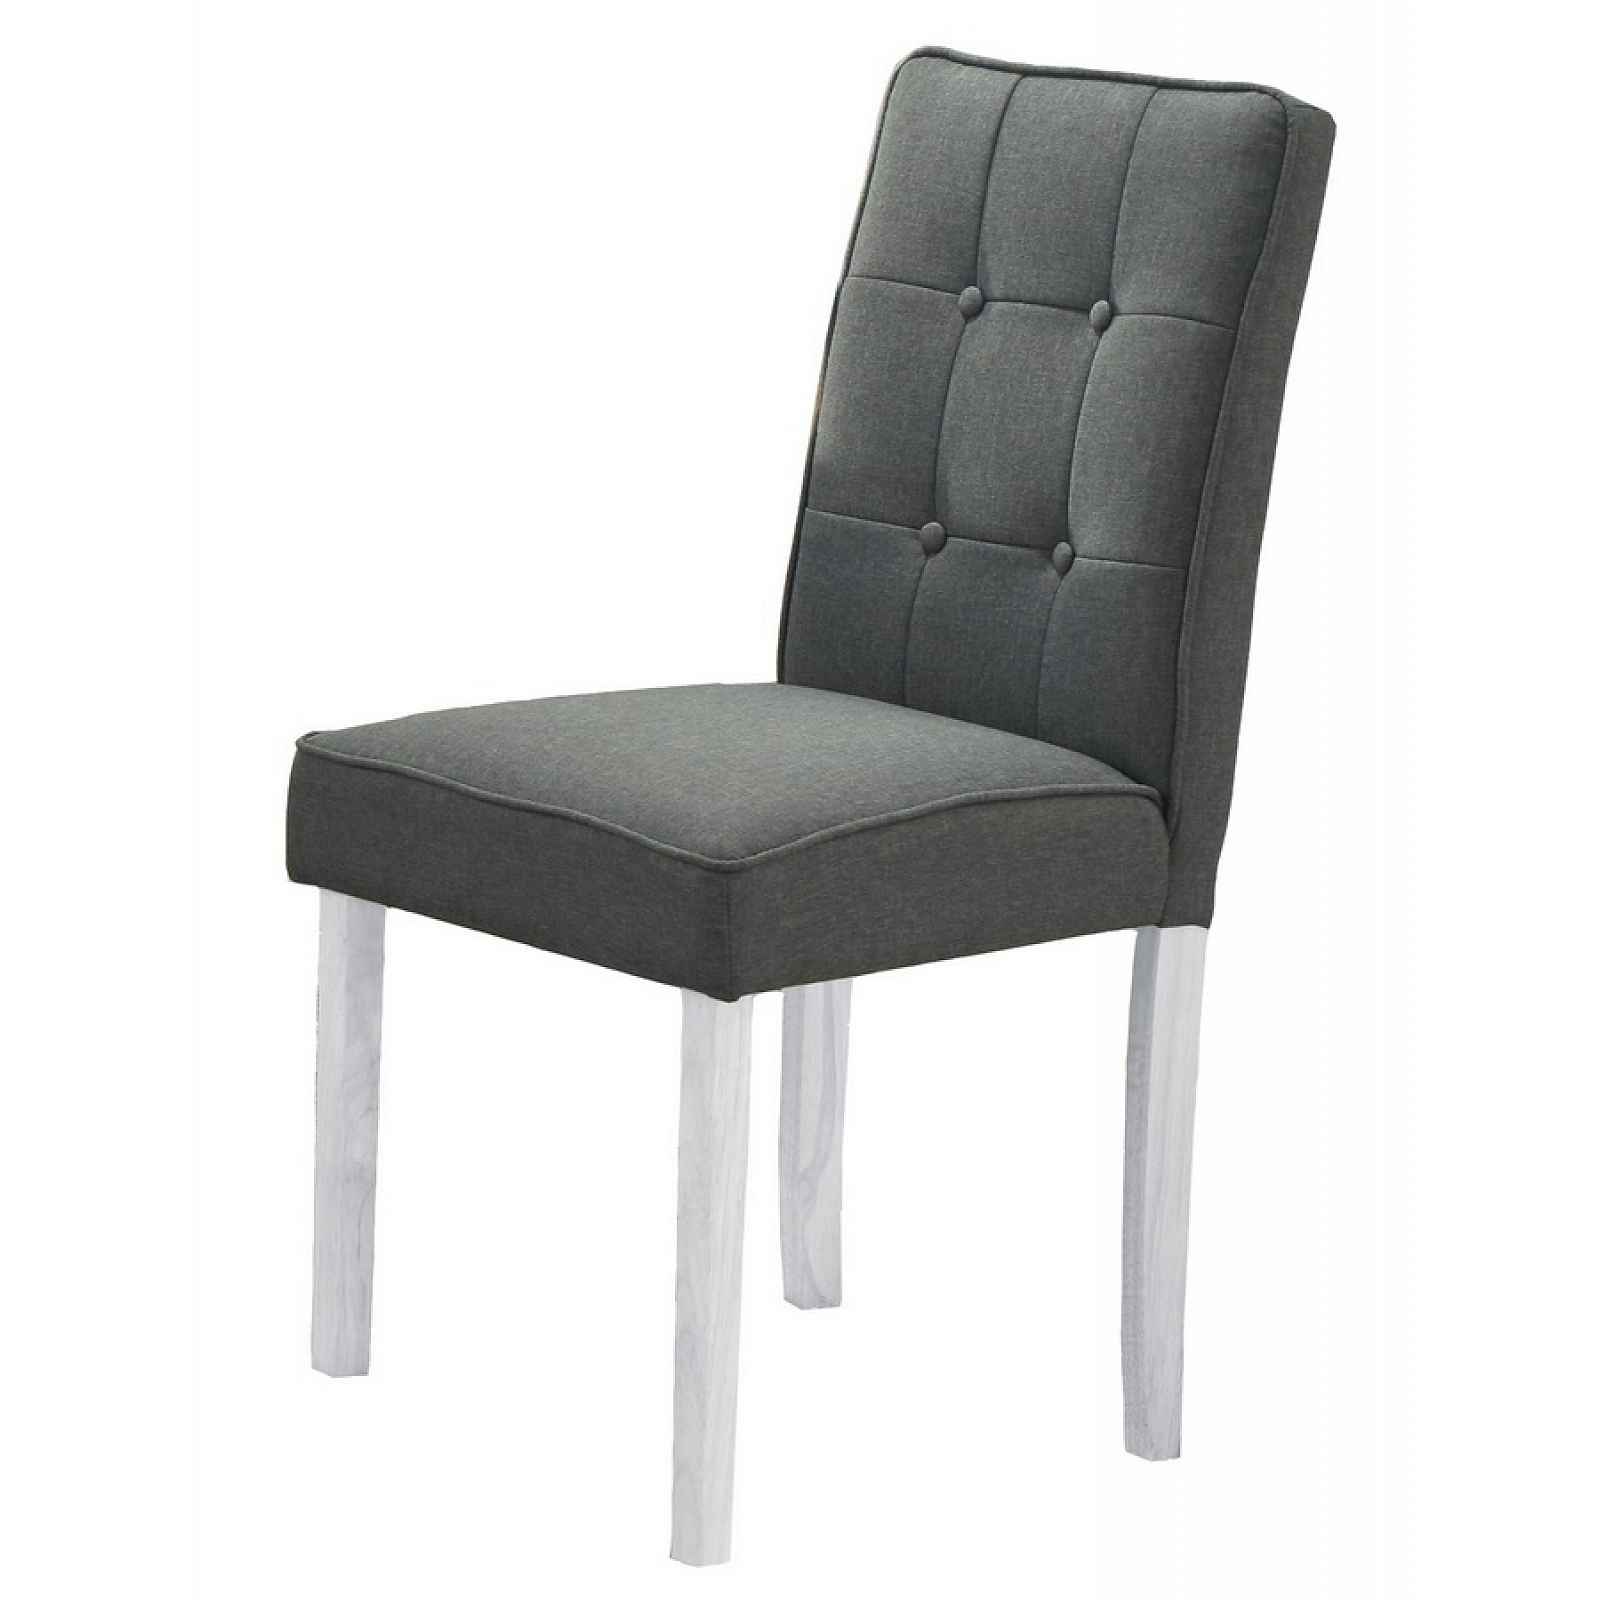 Jídelní čalouněná židle MALTES, šedá/bílá